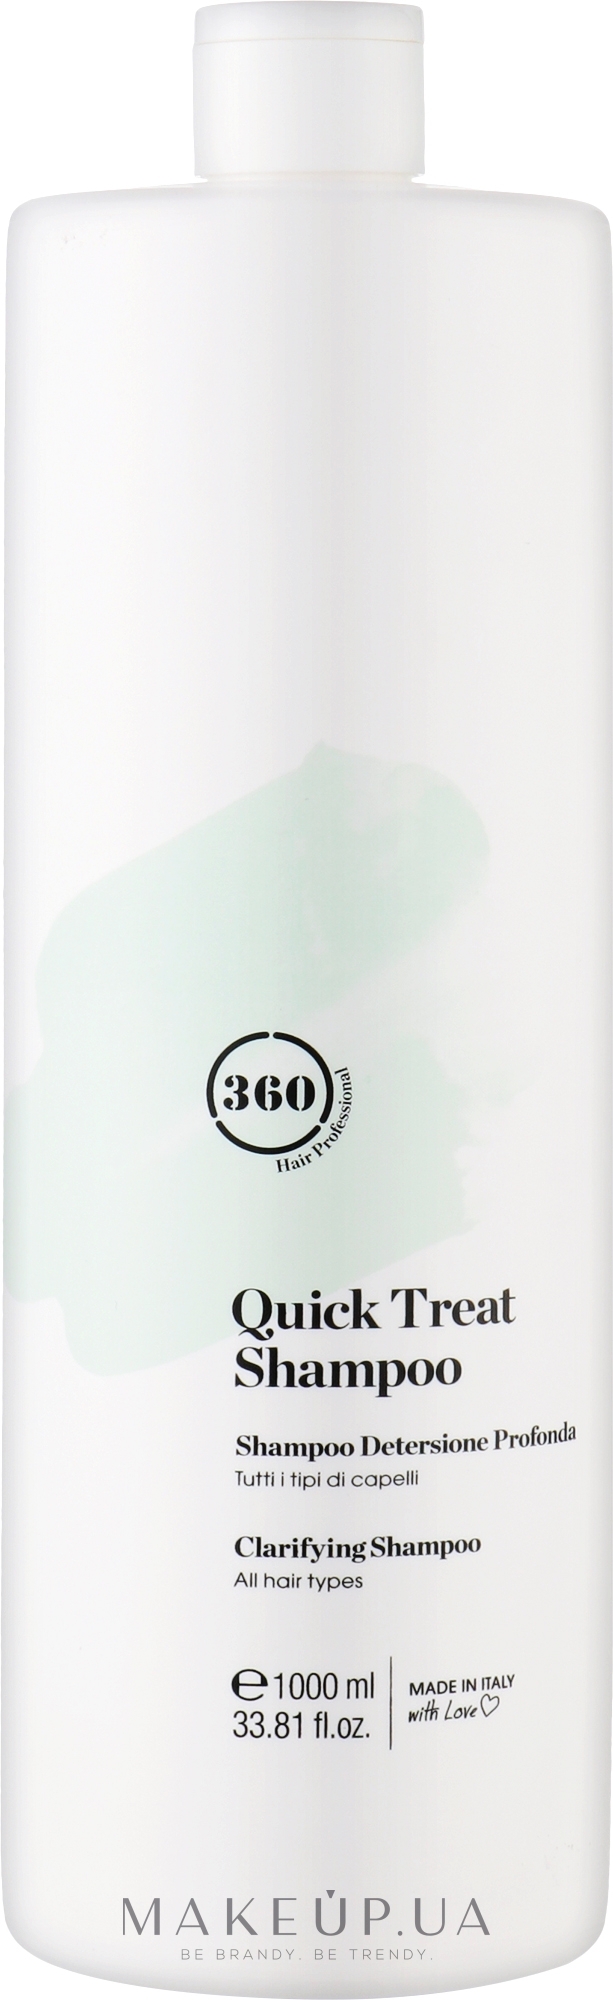 Шампунь для глубокого очищения всех типов волос - 360 Be Quick Treat Shampoo — фото 1000ml